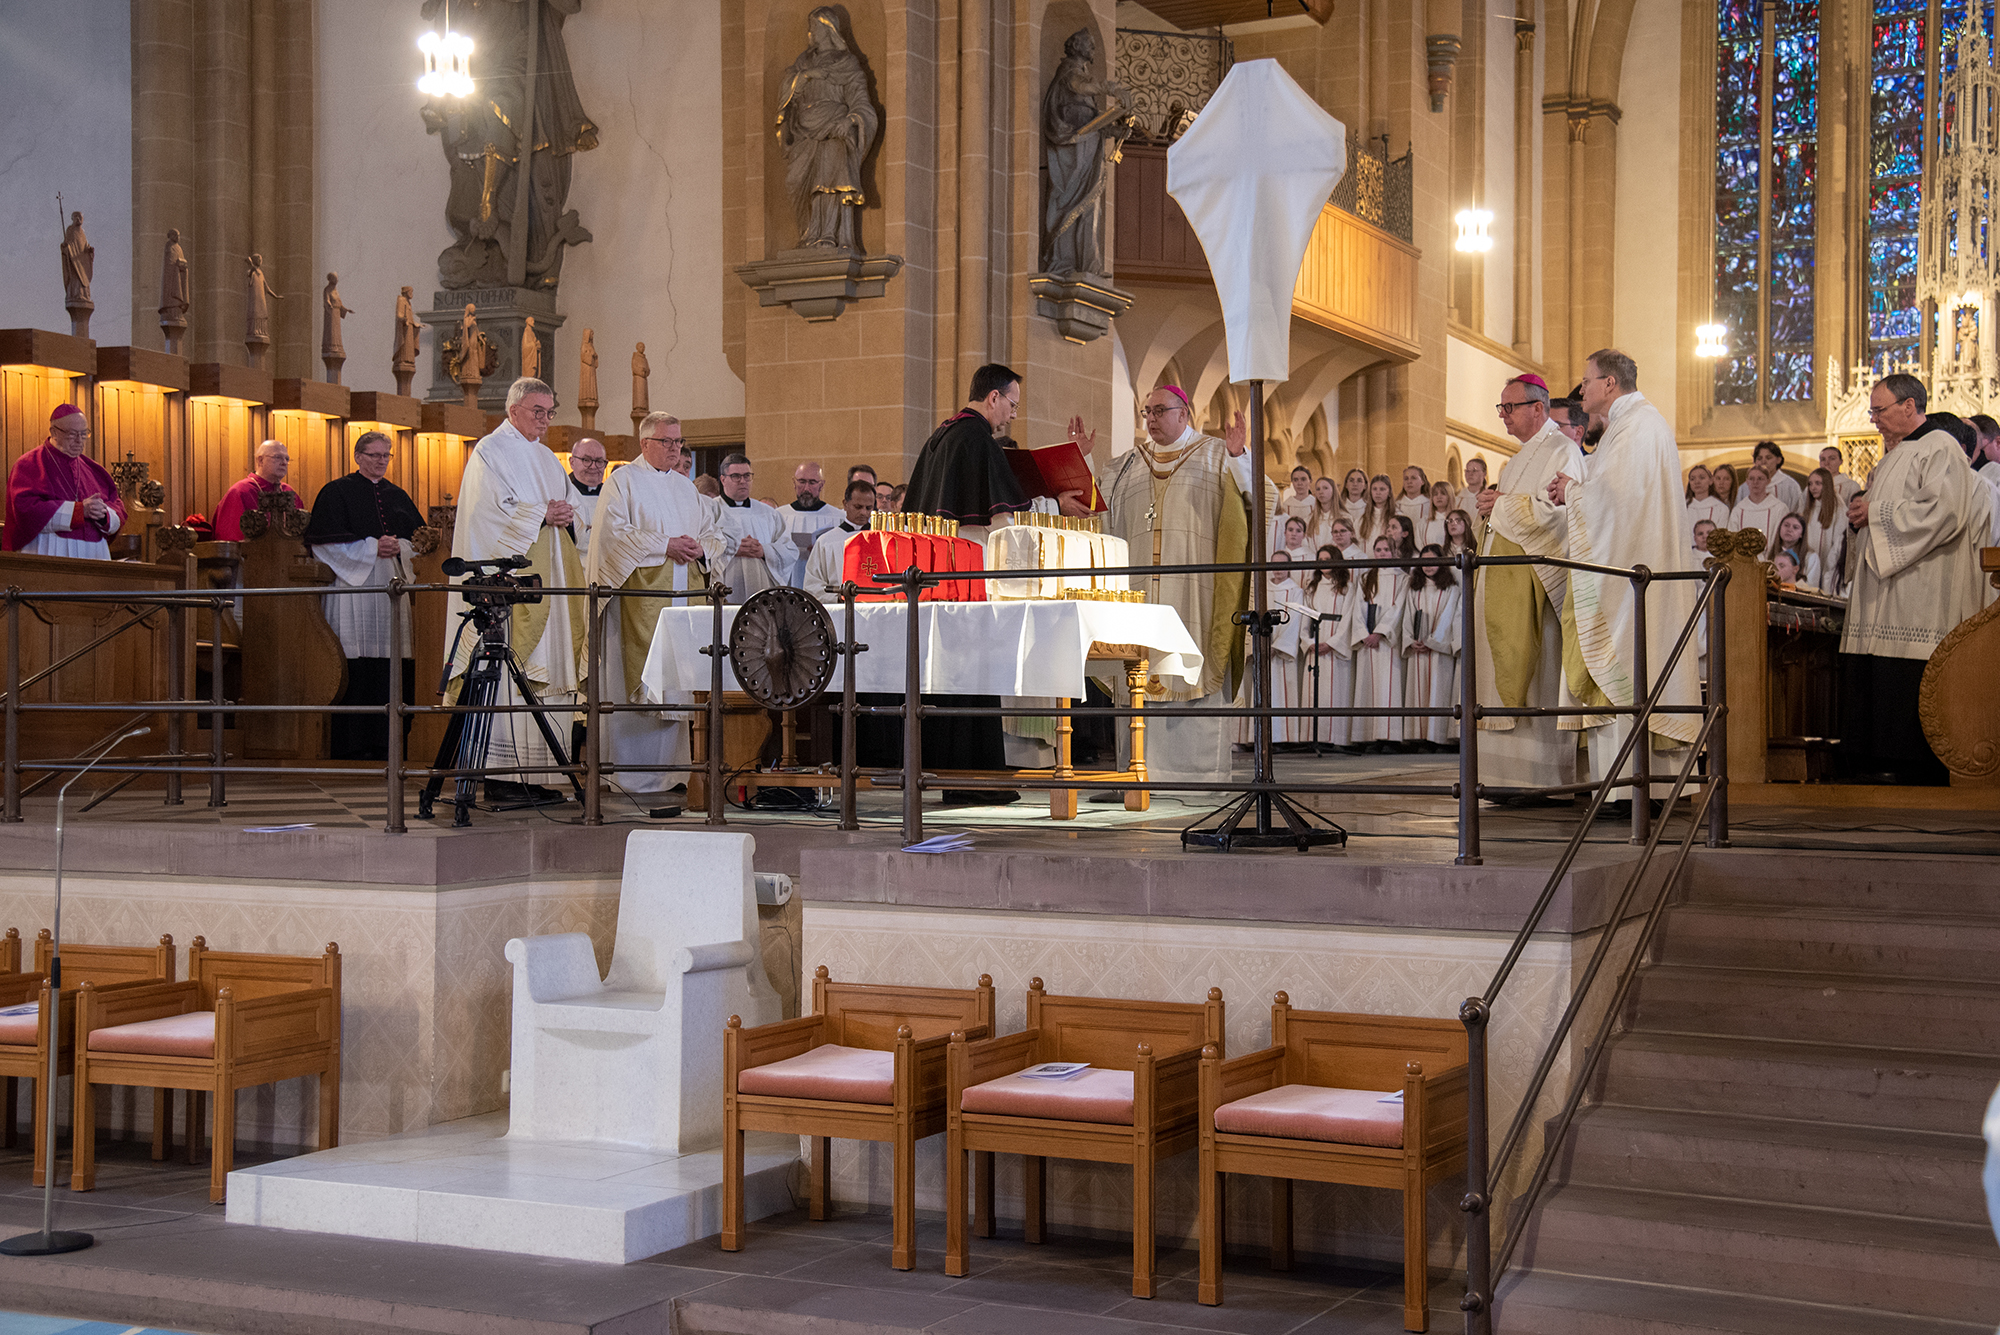 Diözesanadministrator ermutigt zum priesterlichen Dienst. Chrisam-Messe im Paderborner Dom mit Erneuerung des Weiheversprechens und Weihe der heiligen Öle